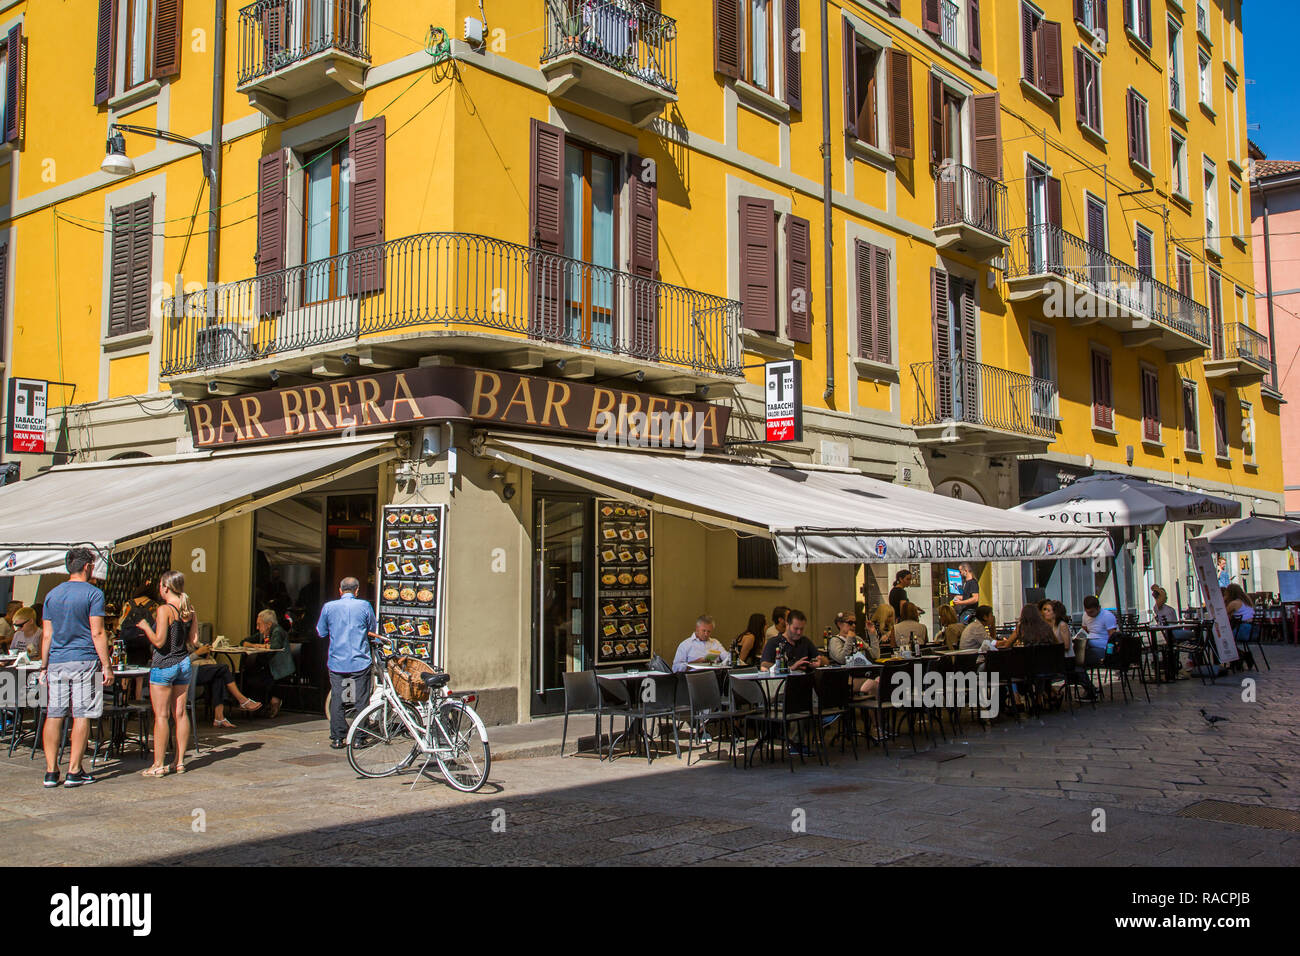 Blick auf die Bar und farbenfrohe Architektur im Stadtteil Brera, Mailand, Lombardei, Italien, Europa Stockfoto